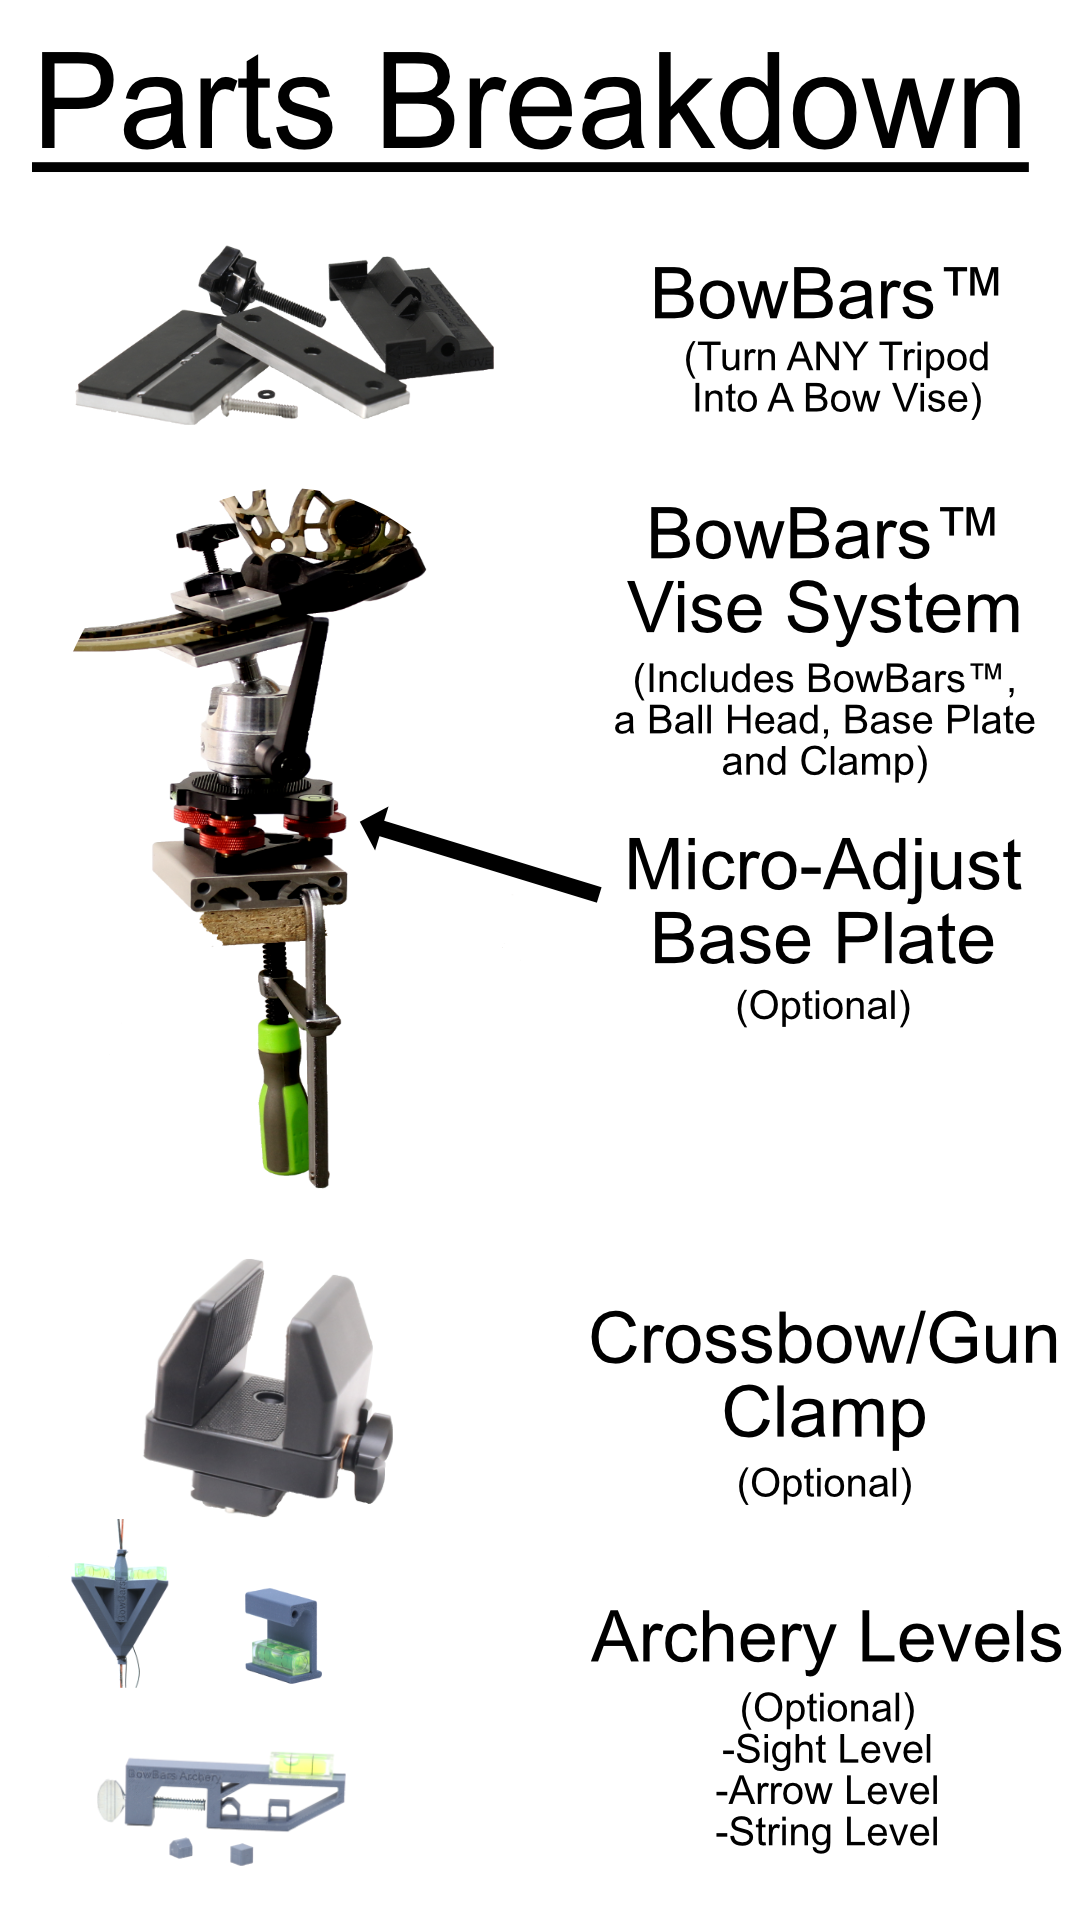 BowBars™ Vise System